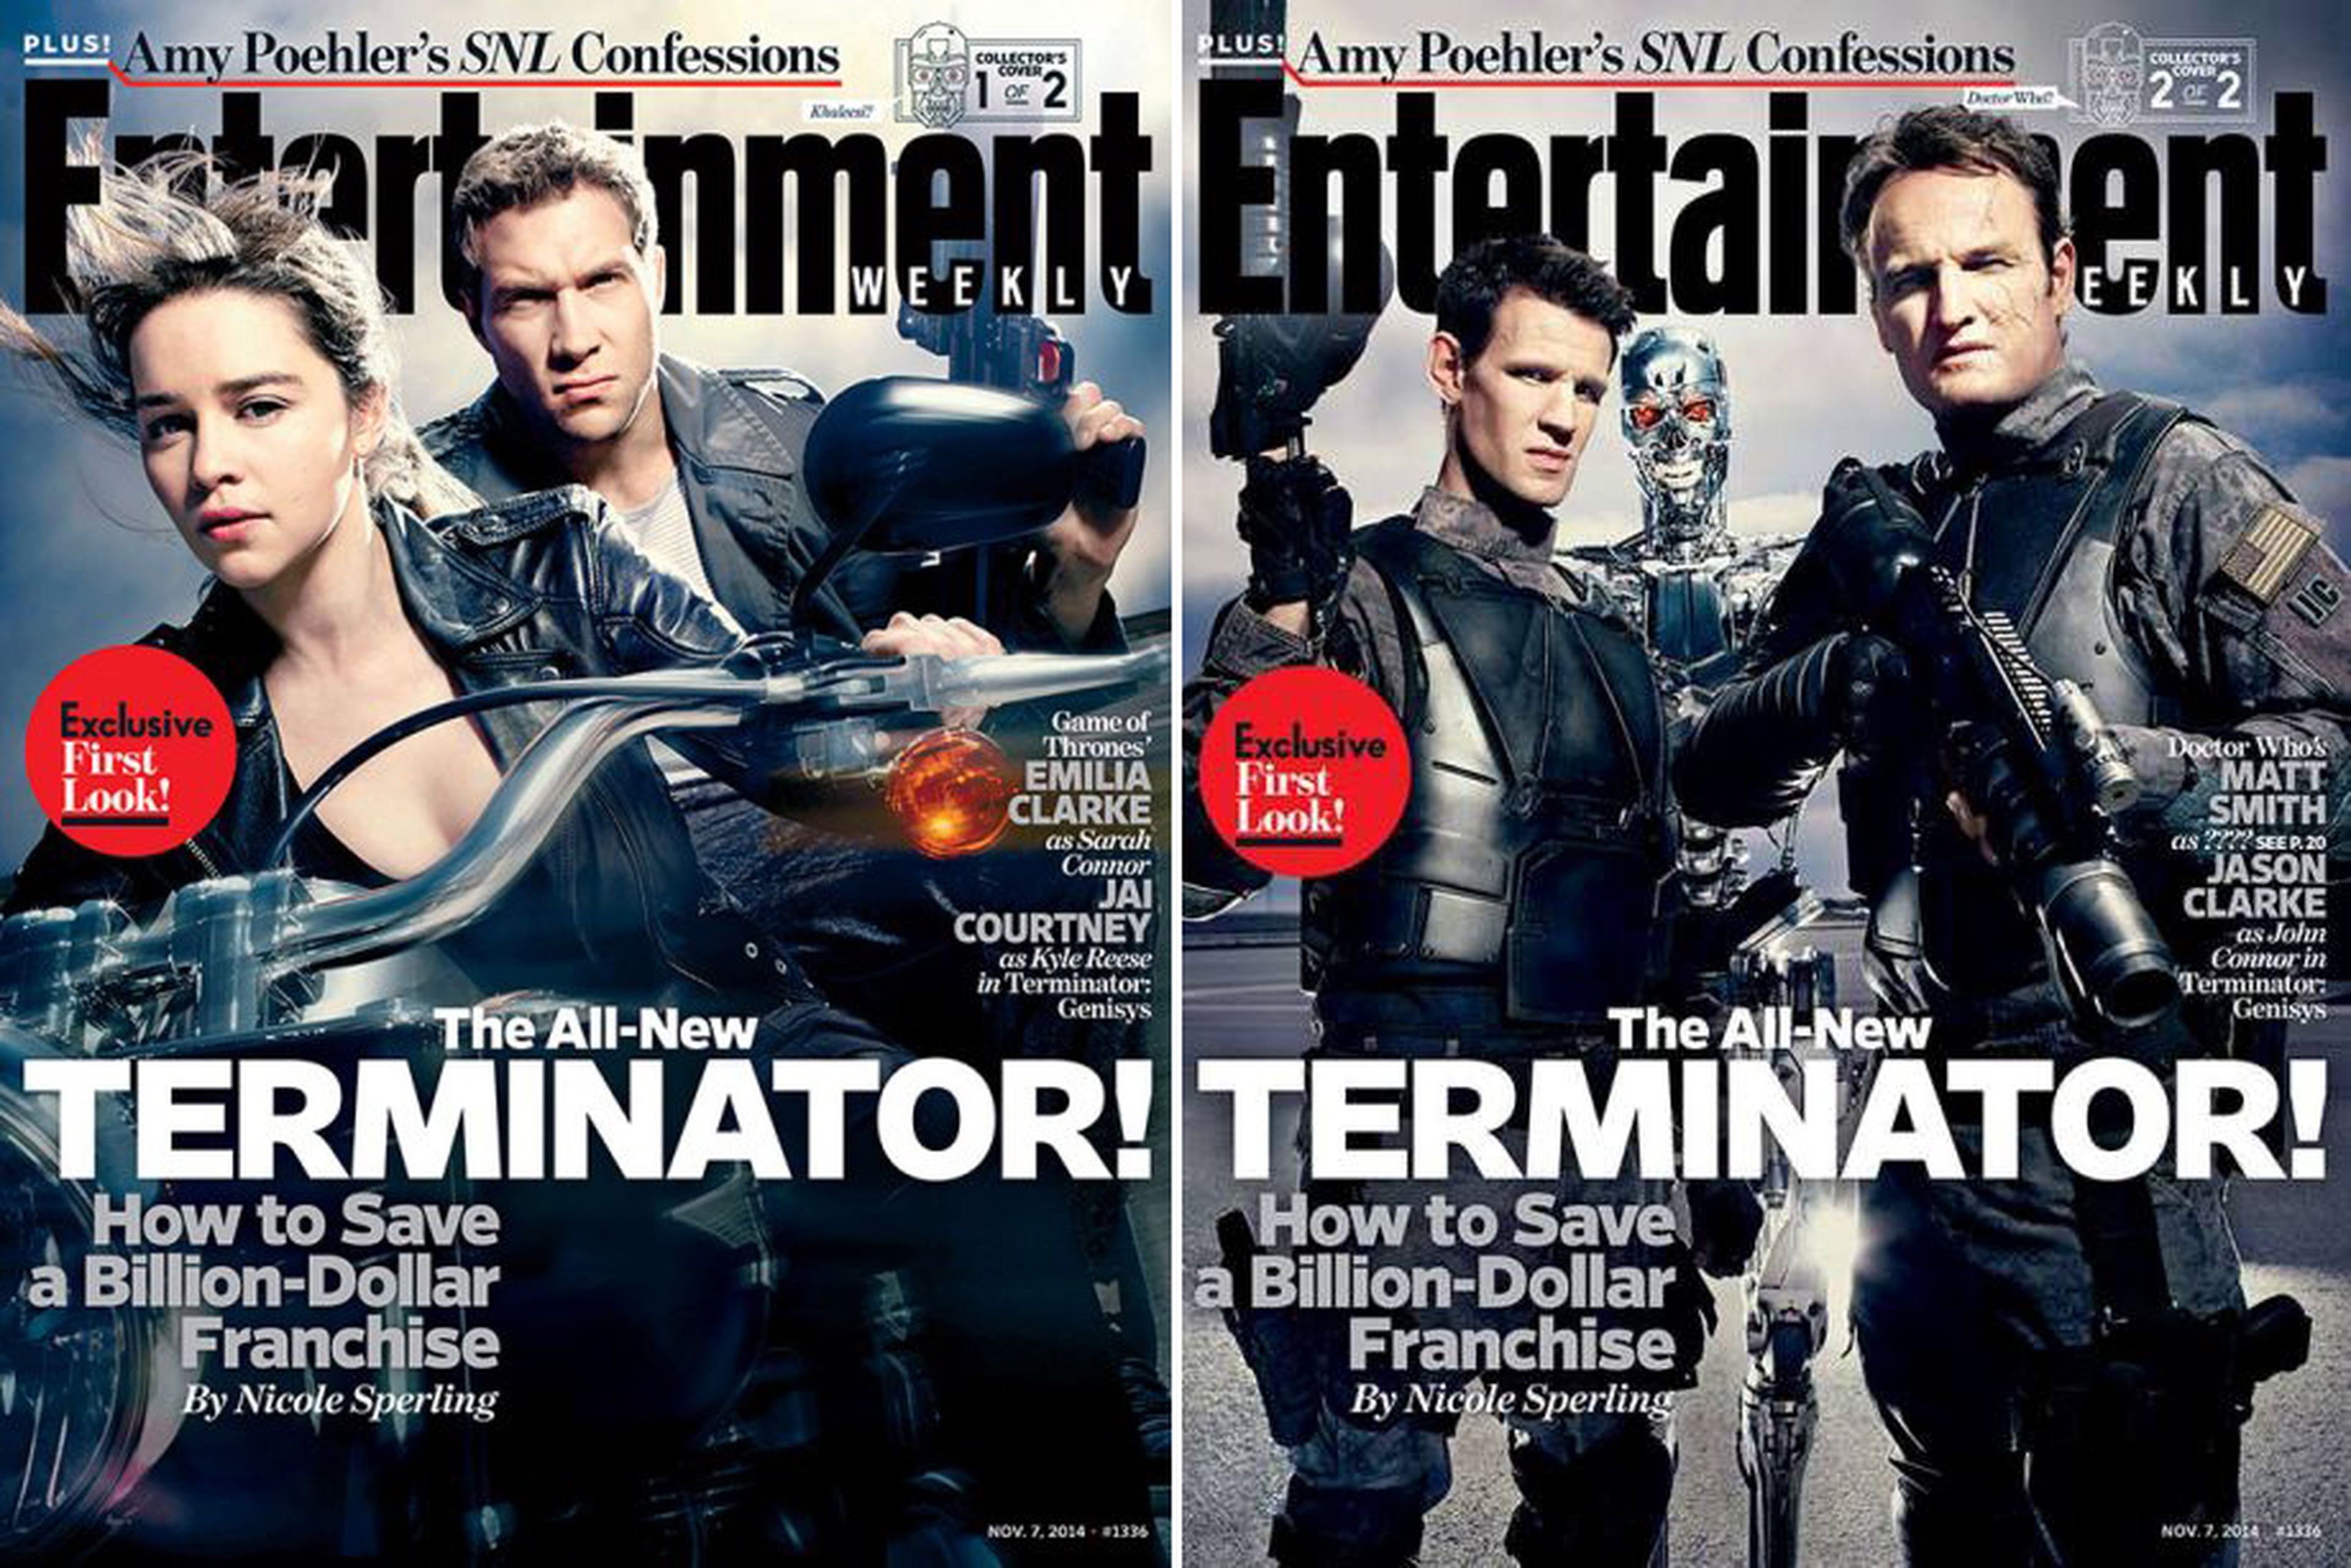 Novedades sobre Terminator: Genisys e imágenes promocionales